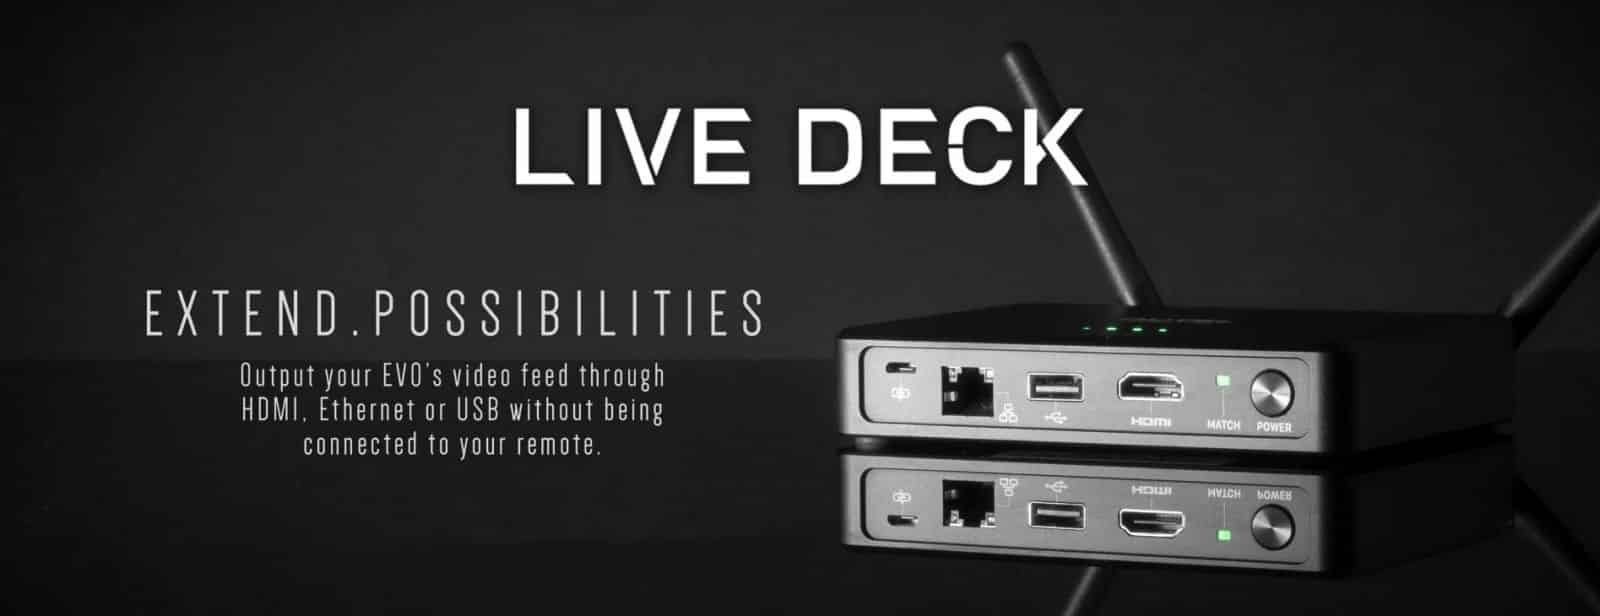 Autel Live deck extend possibilities